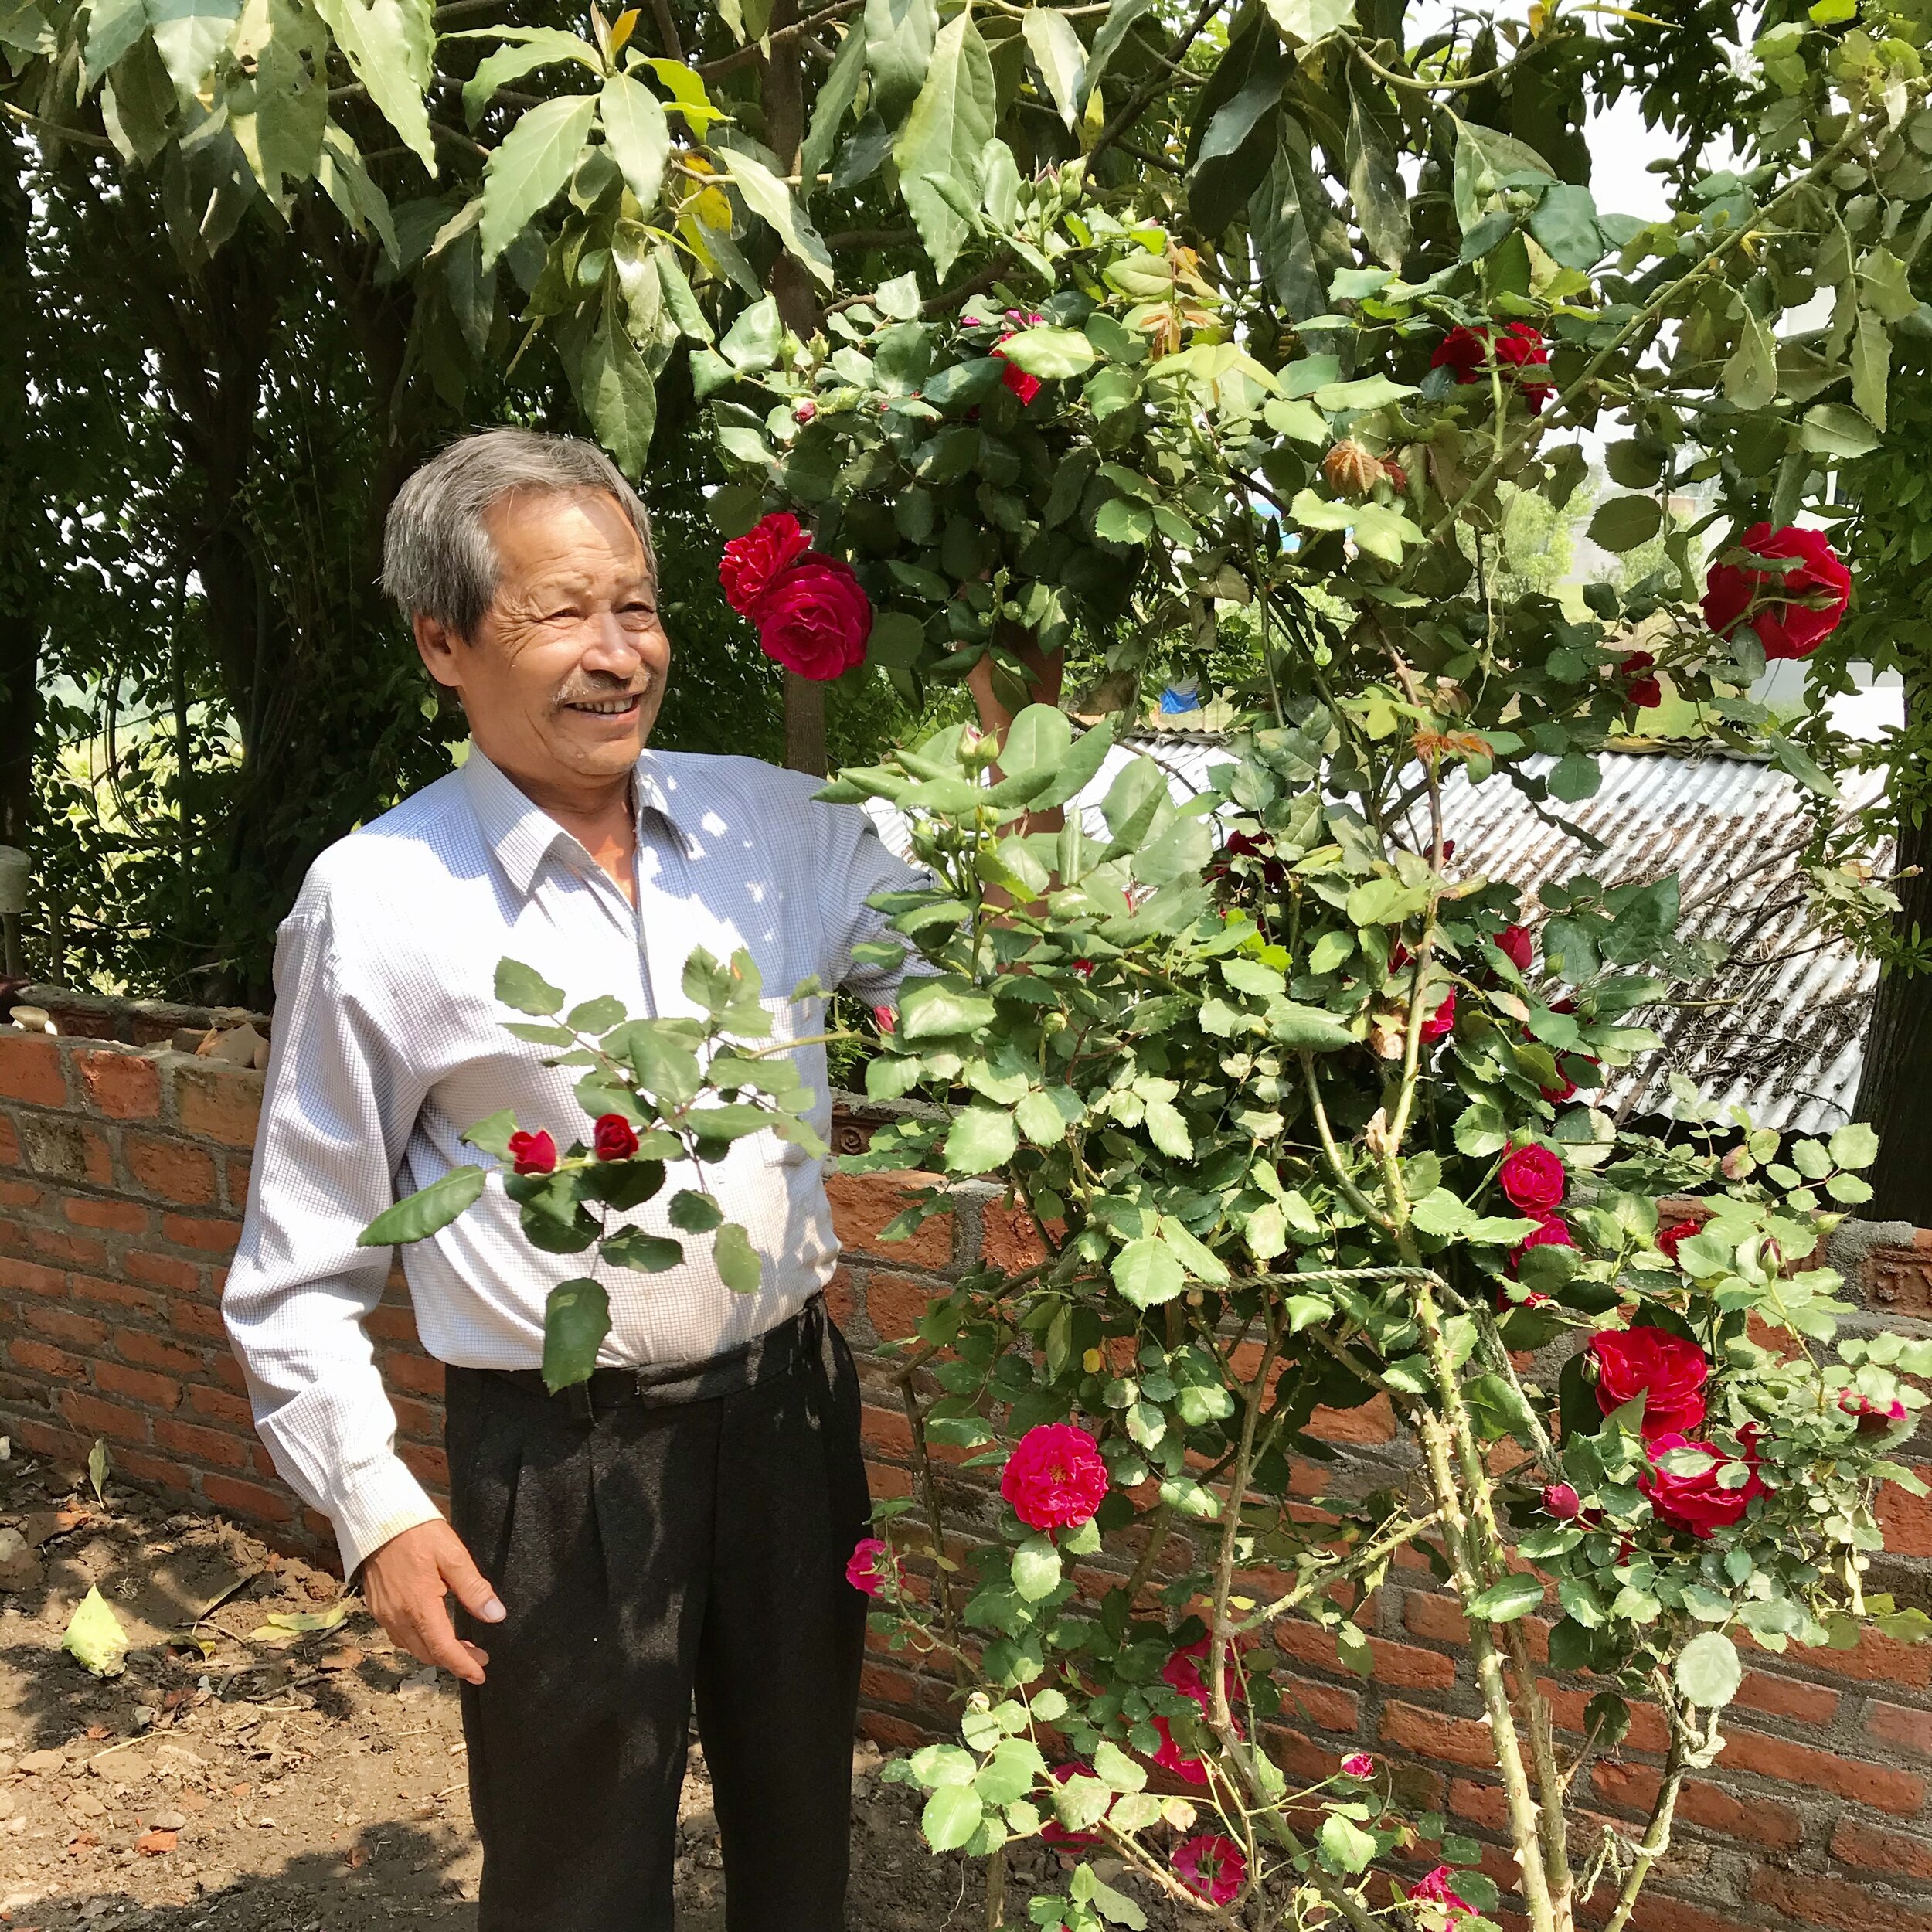  De vader van Samjhana poseert met de rozenstruik die prachtig in bloei staat. 